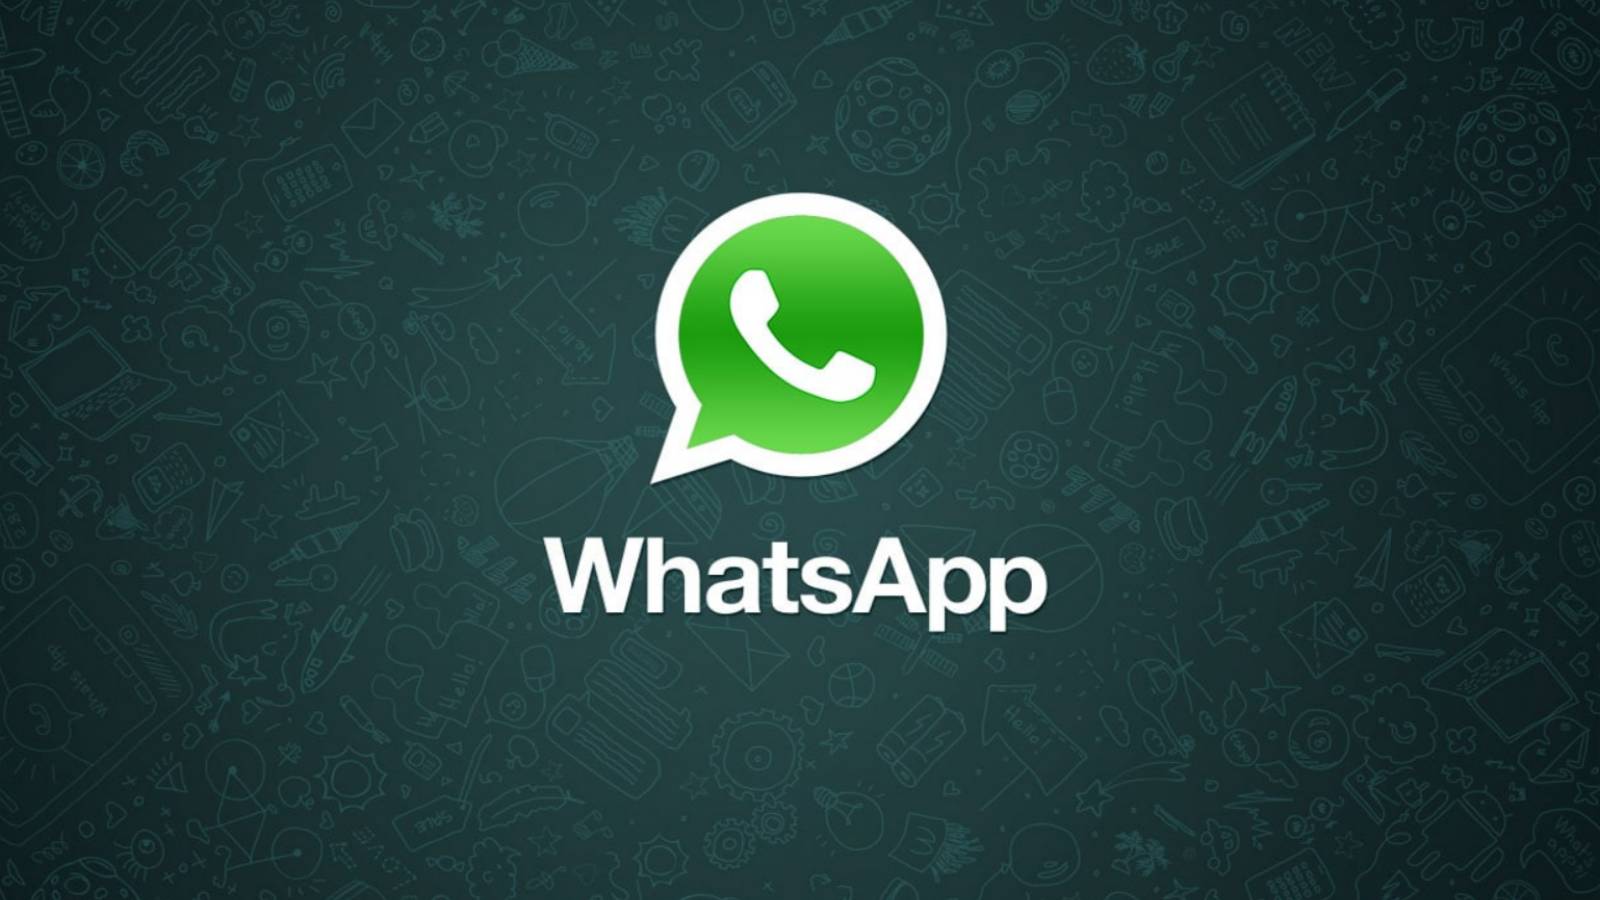 Zakaz WhatsAppa